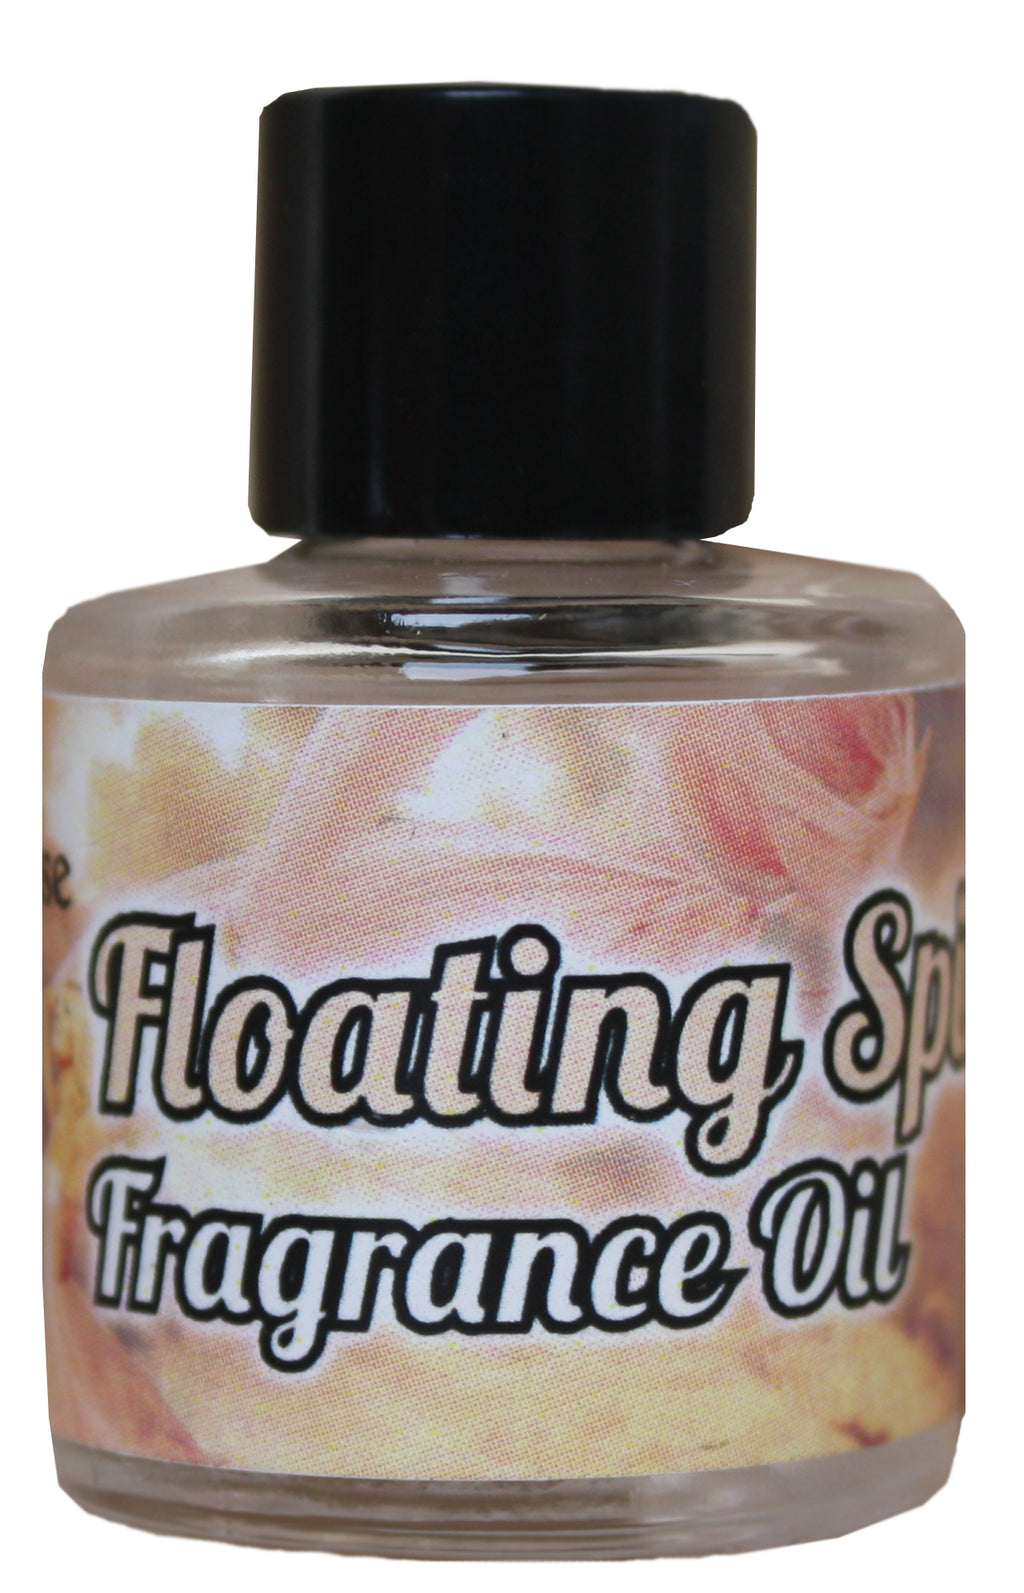 Floating Spirit Fragrance Oil